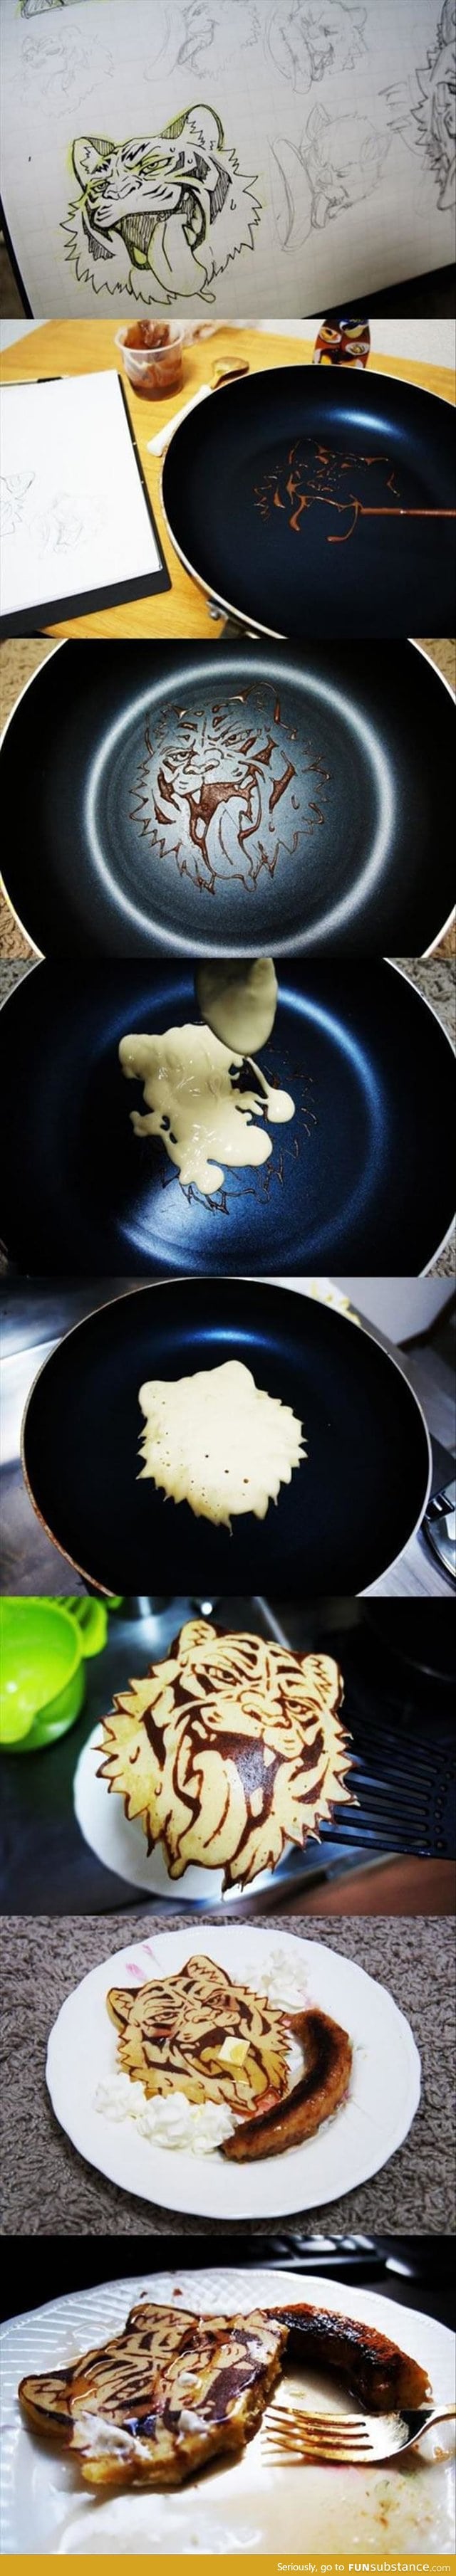 Bad-ass pancakes